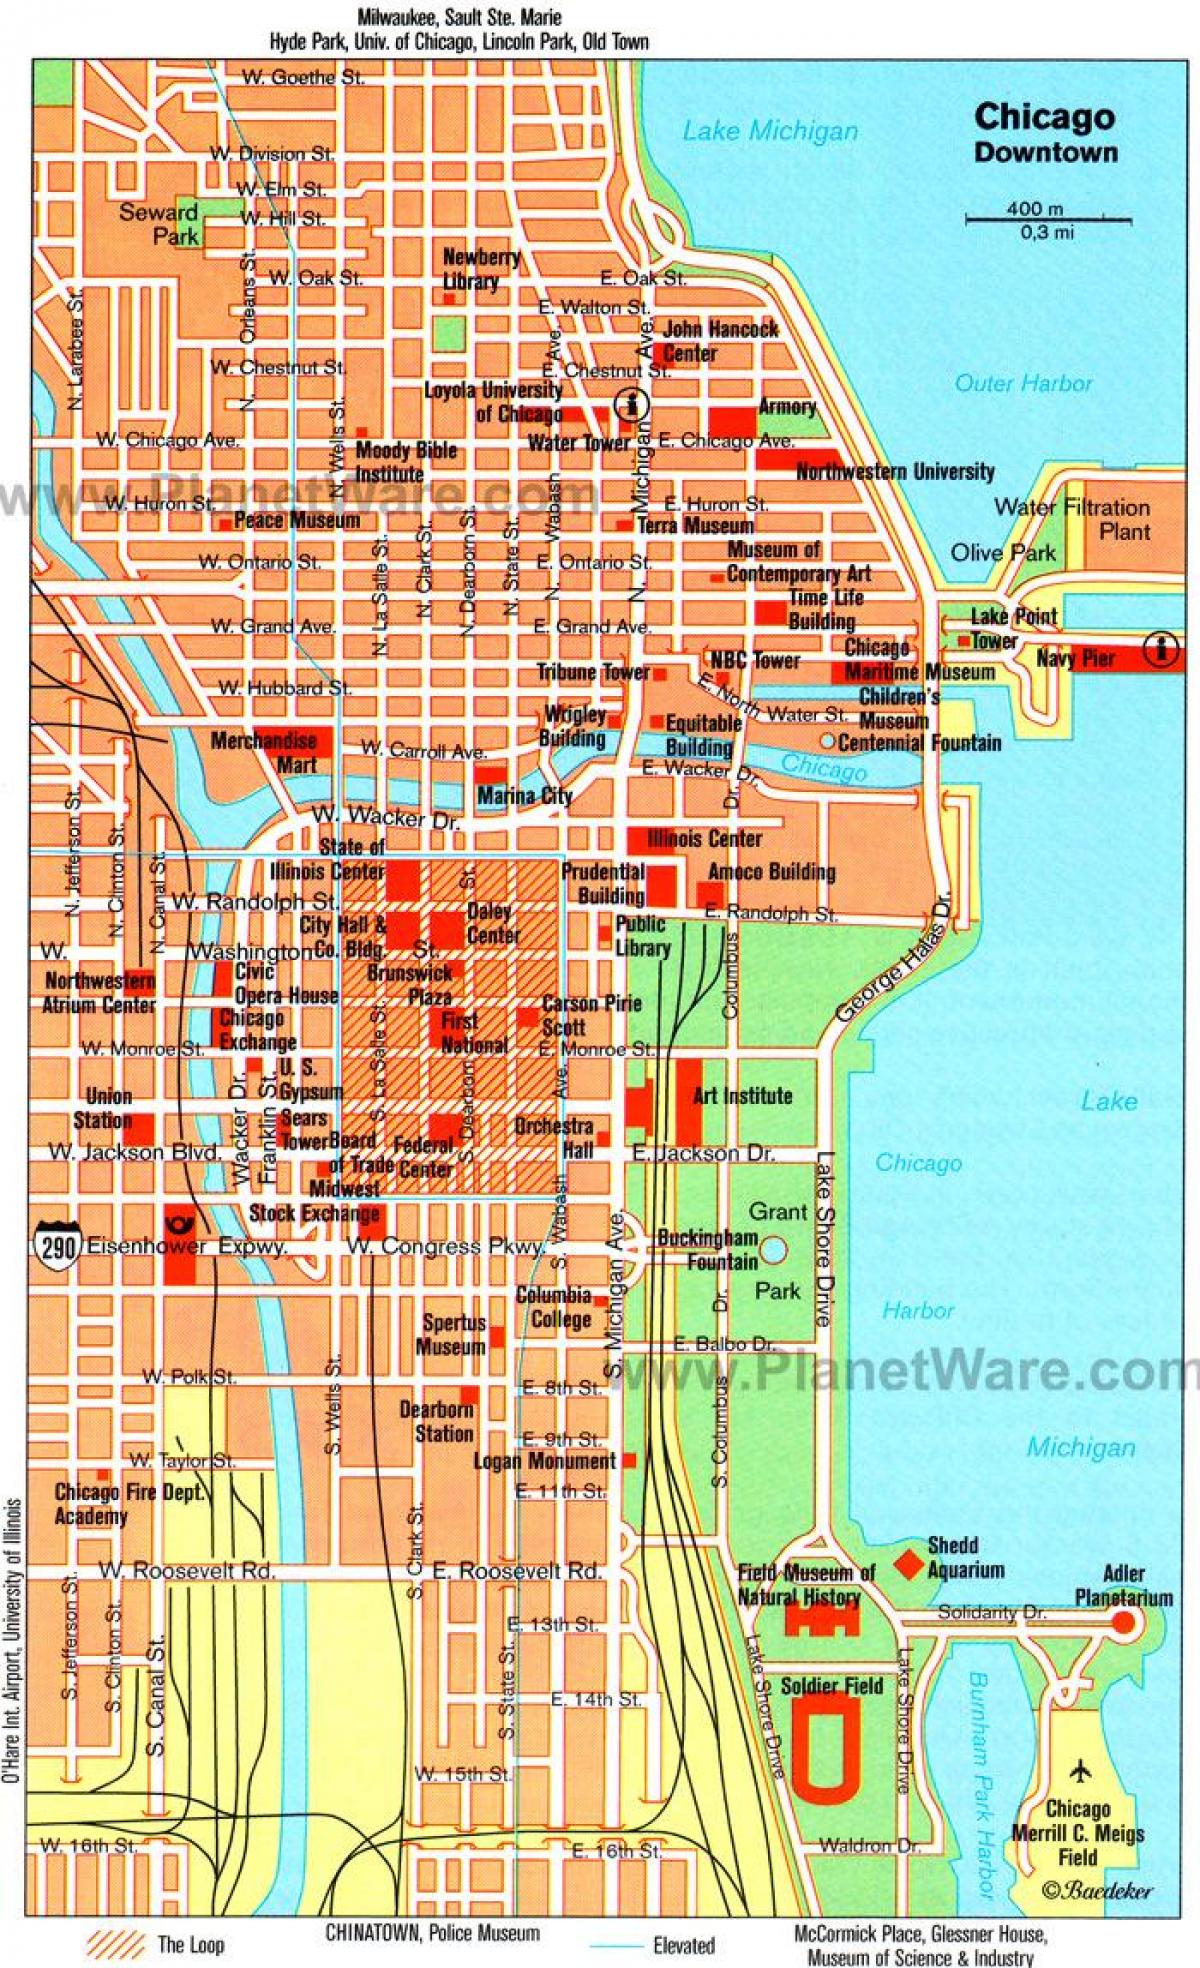 χάρτης των μουσείων στο Σικάγο